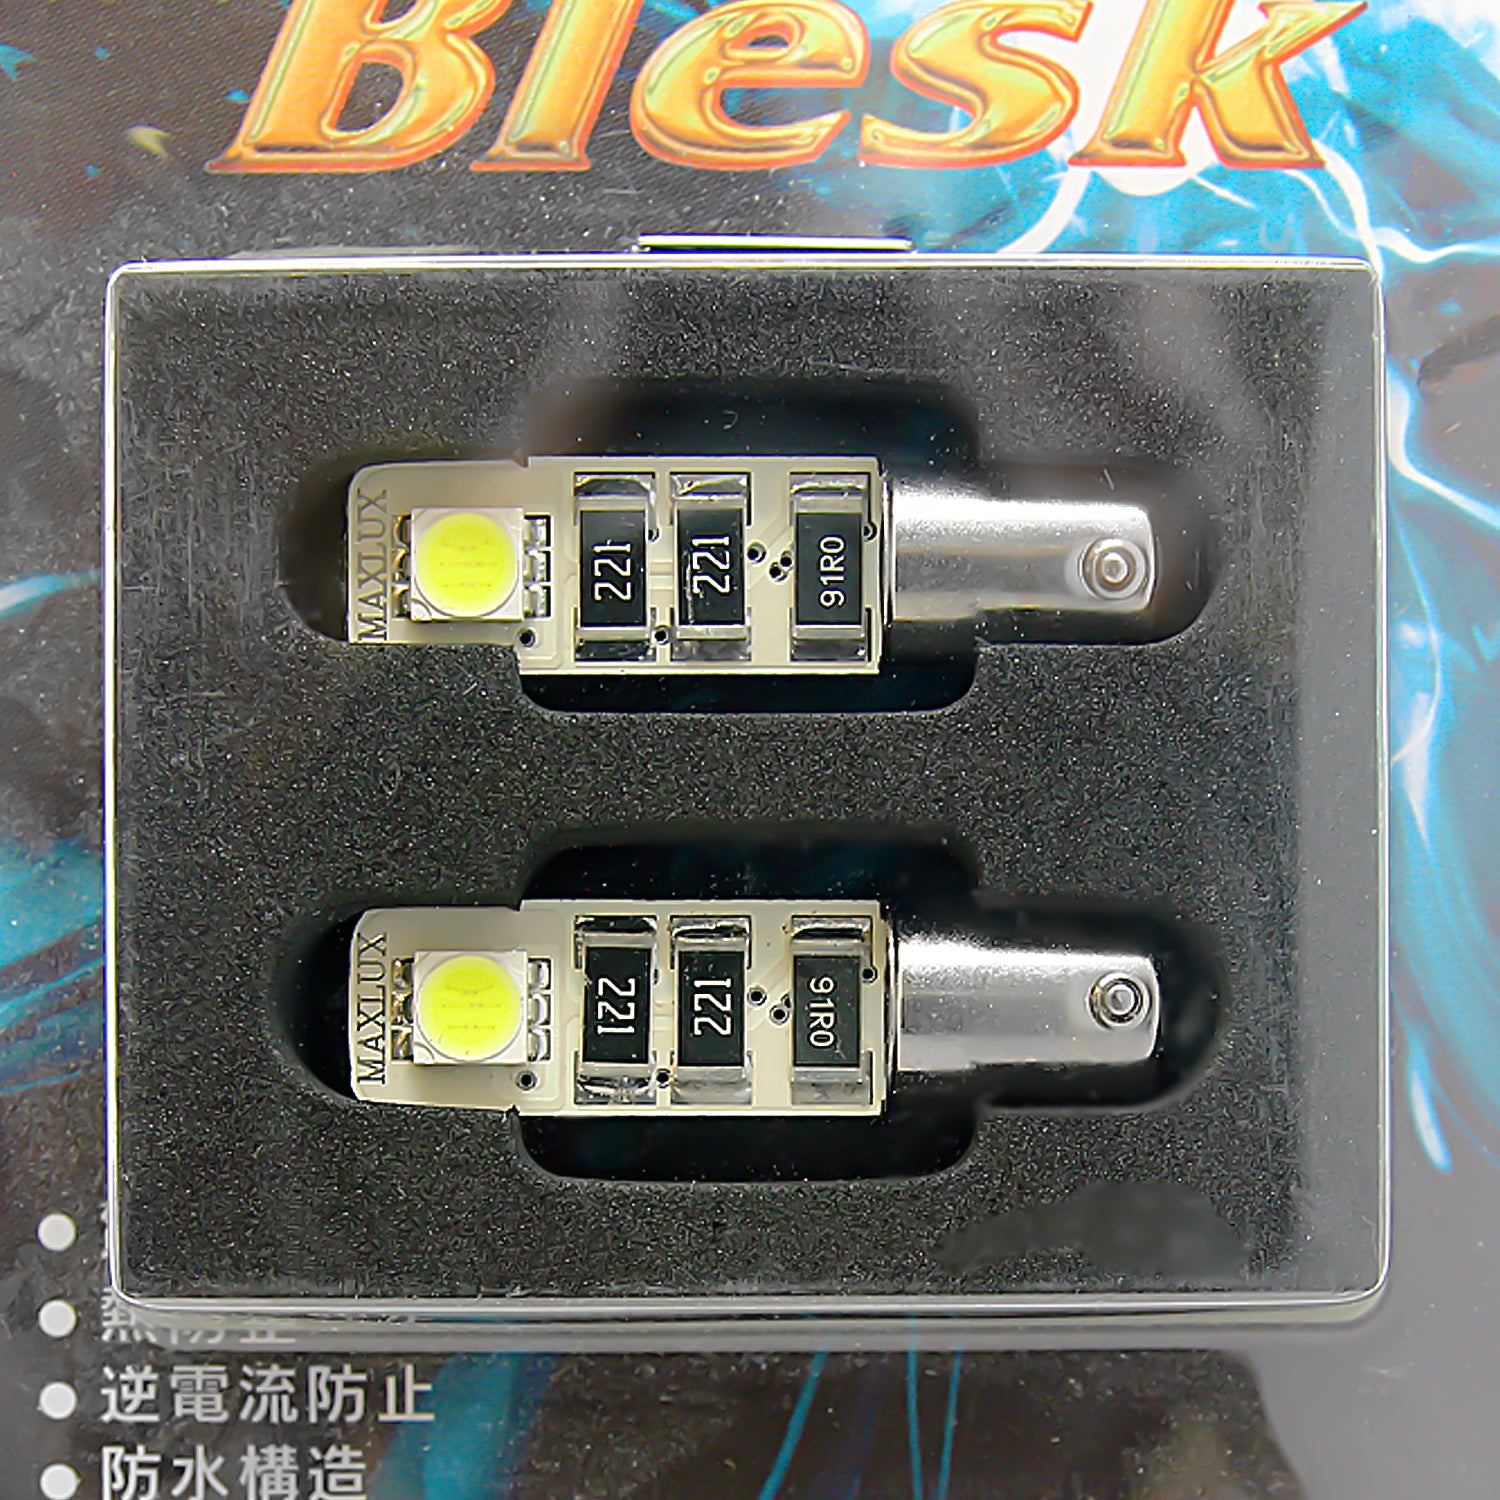 T4W/BA9s: Blesk Error-Free White LED Bulbs LEDBKT4WPWX2 (Pack of 2)